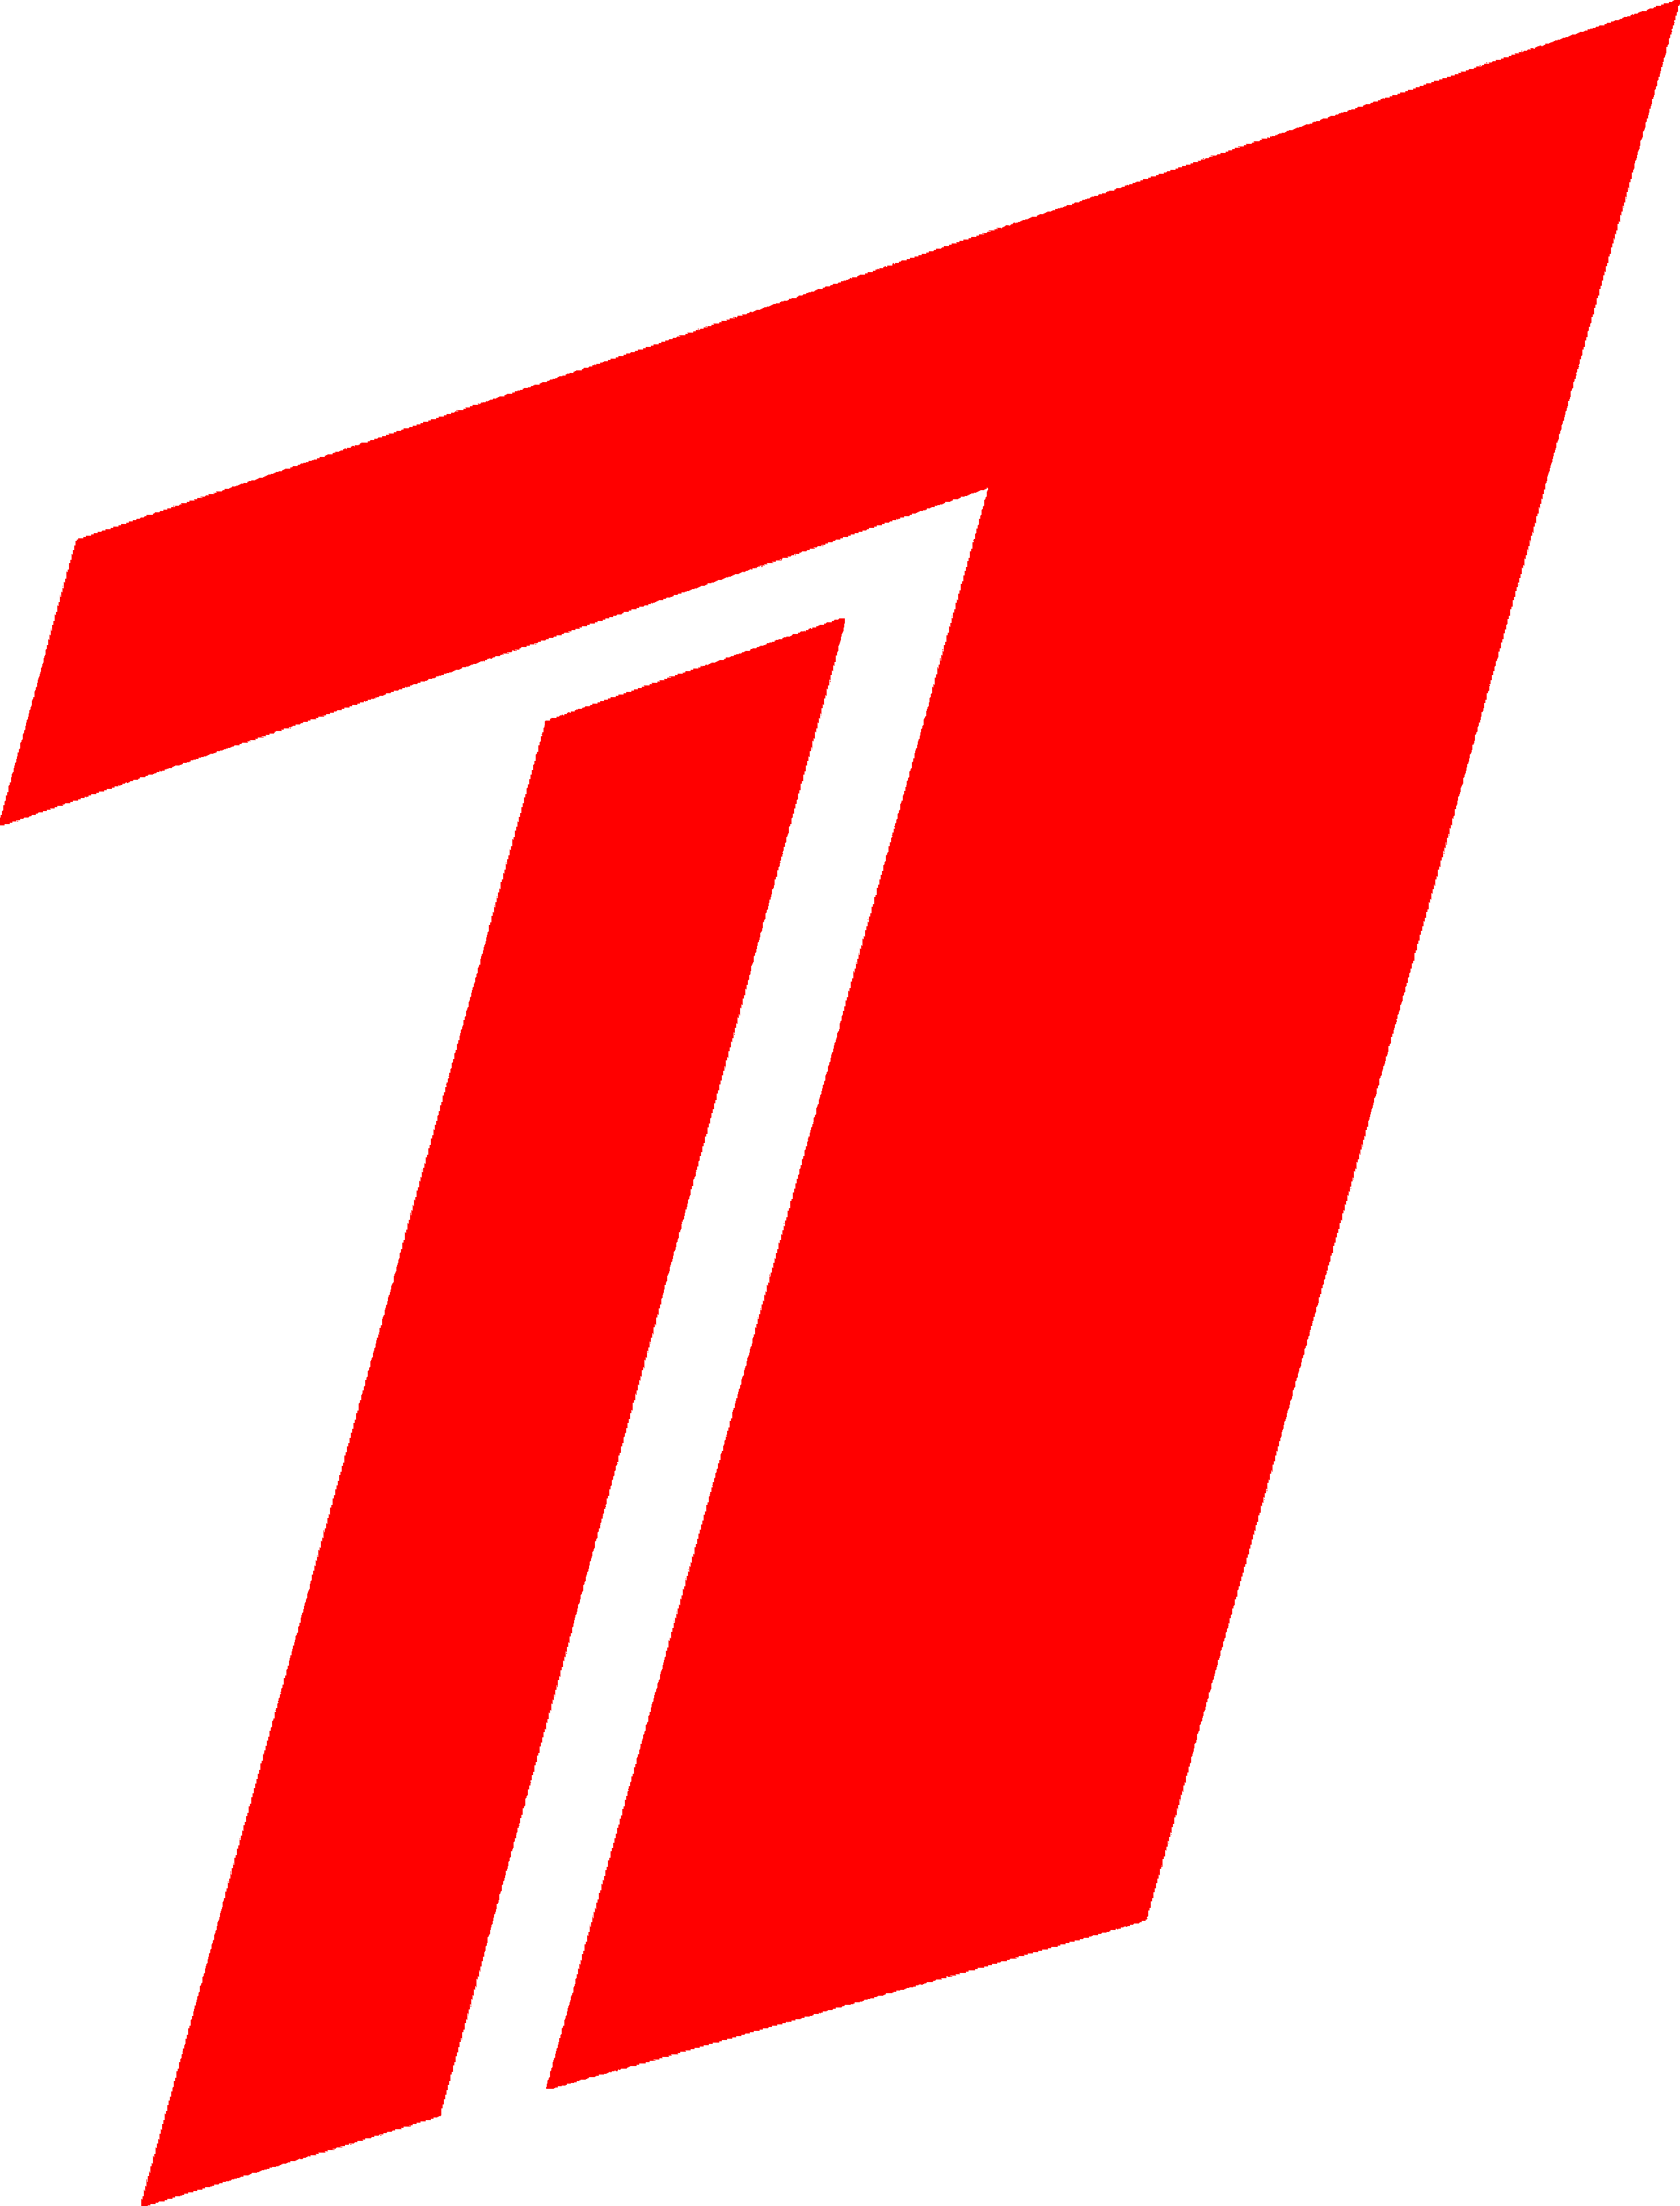 Й1. Первый канал. Логотип телеканала 1. Знак первого канала. Первый логотип первого канала.